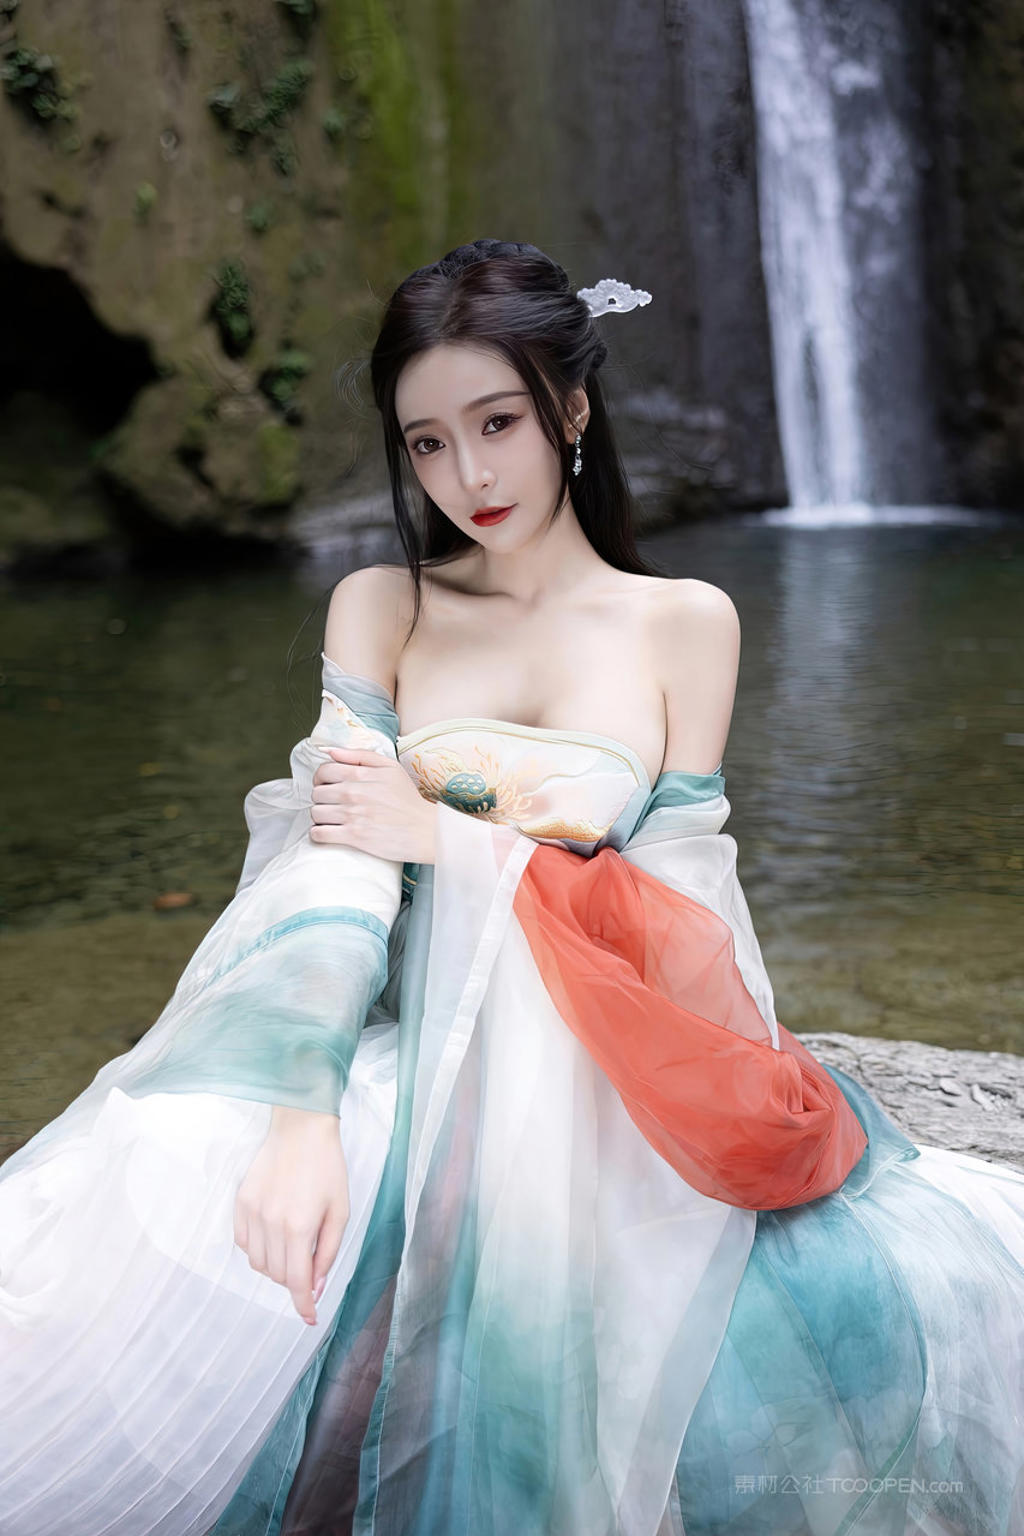 性感大胸古装美女模特王馨瑶高清人体艺术照片